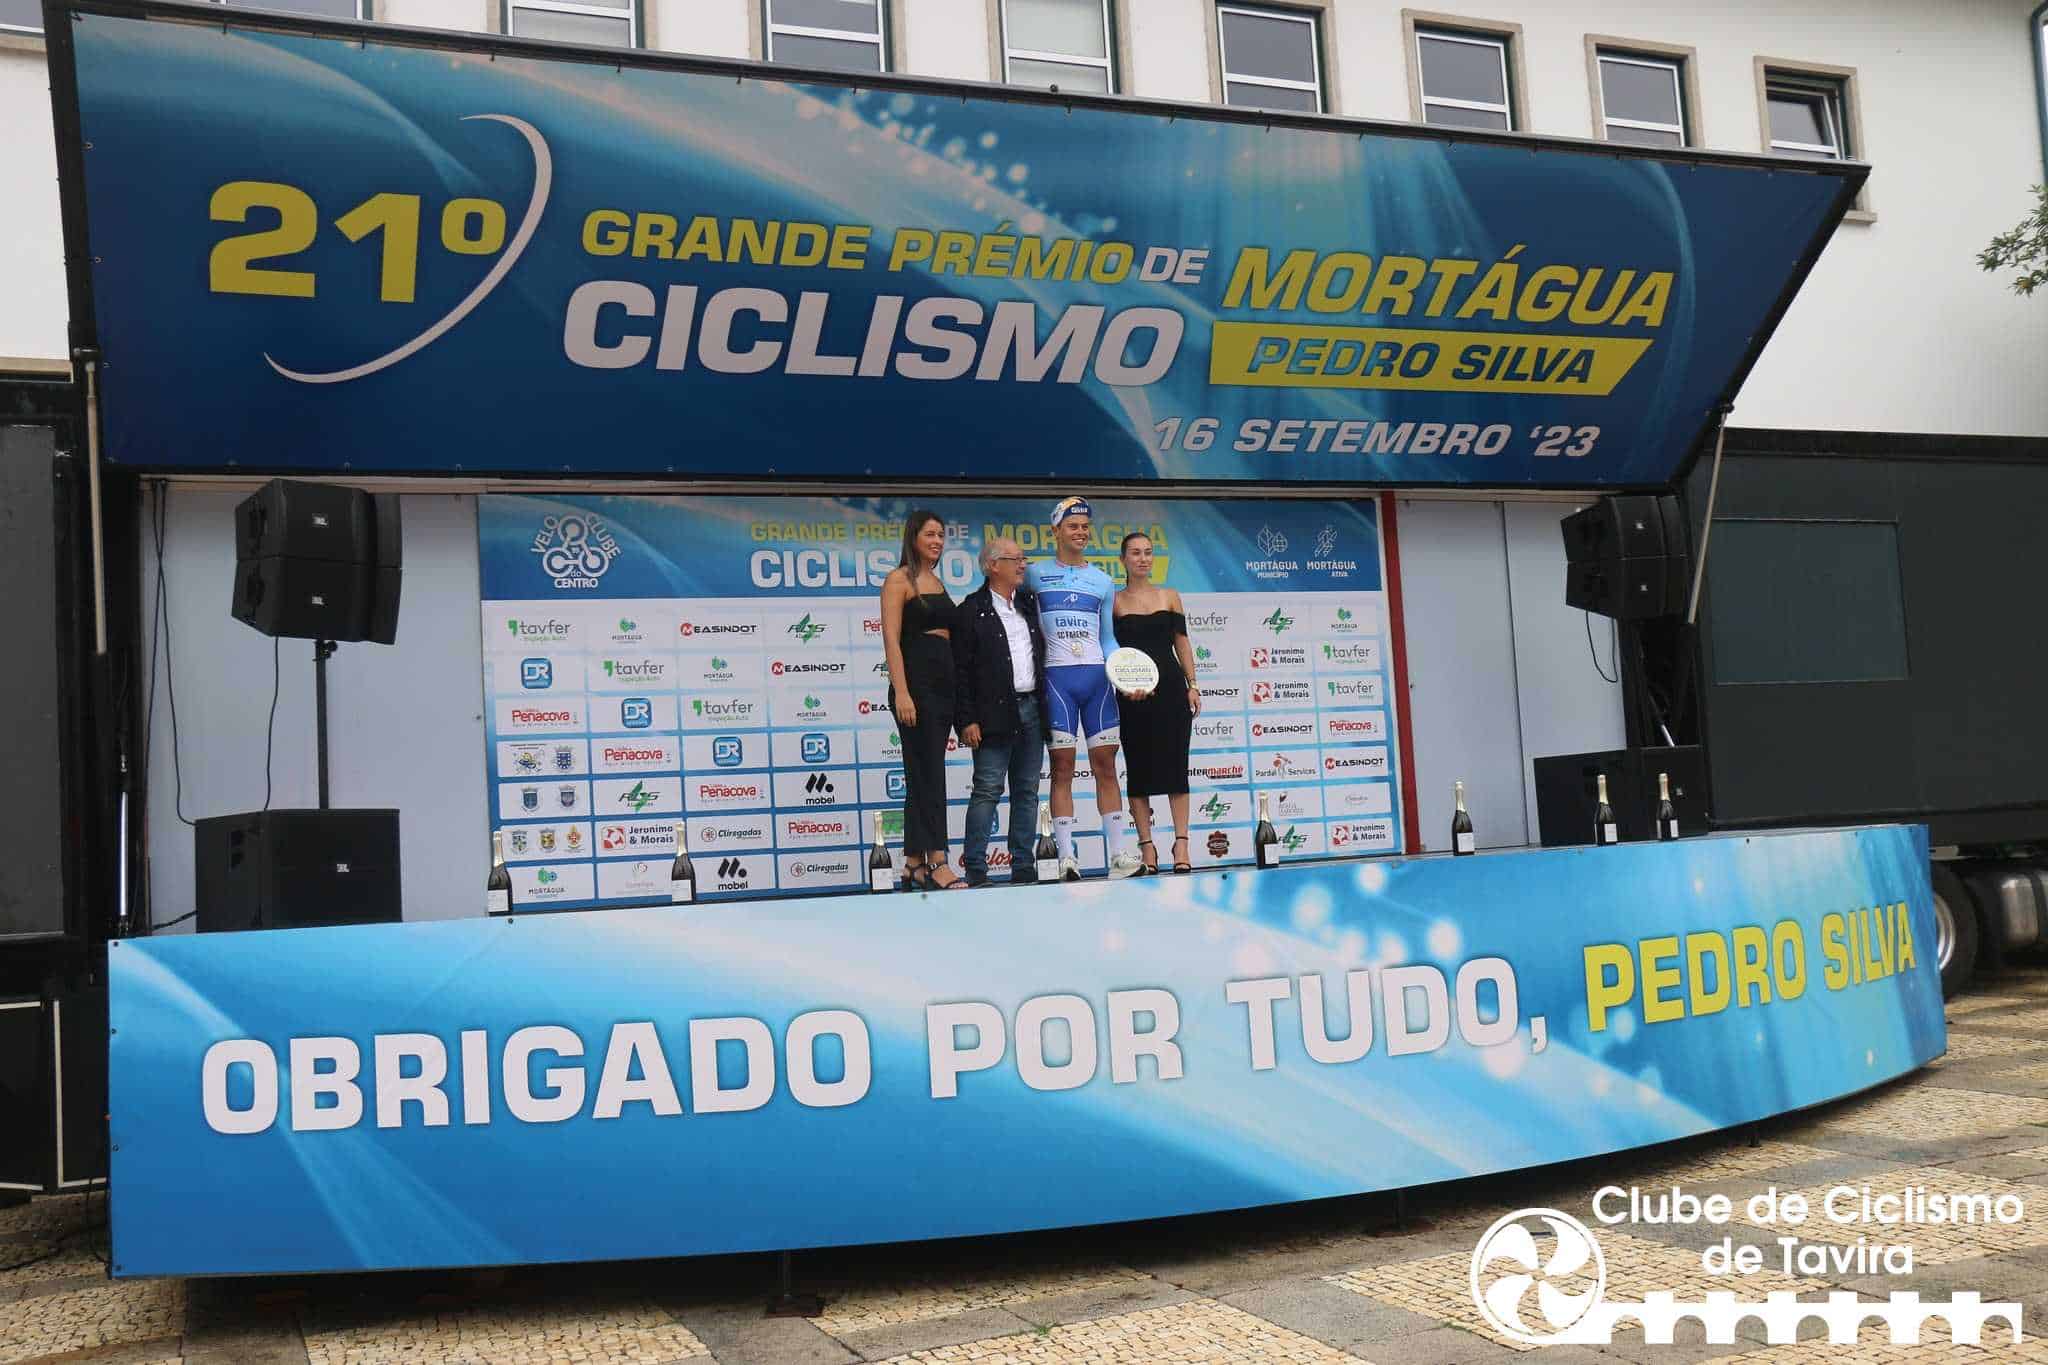 Clube Ciclismo de Tavira - 21º GP de Ciclismo de Mortágua - Pedro Silva16